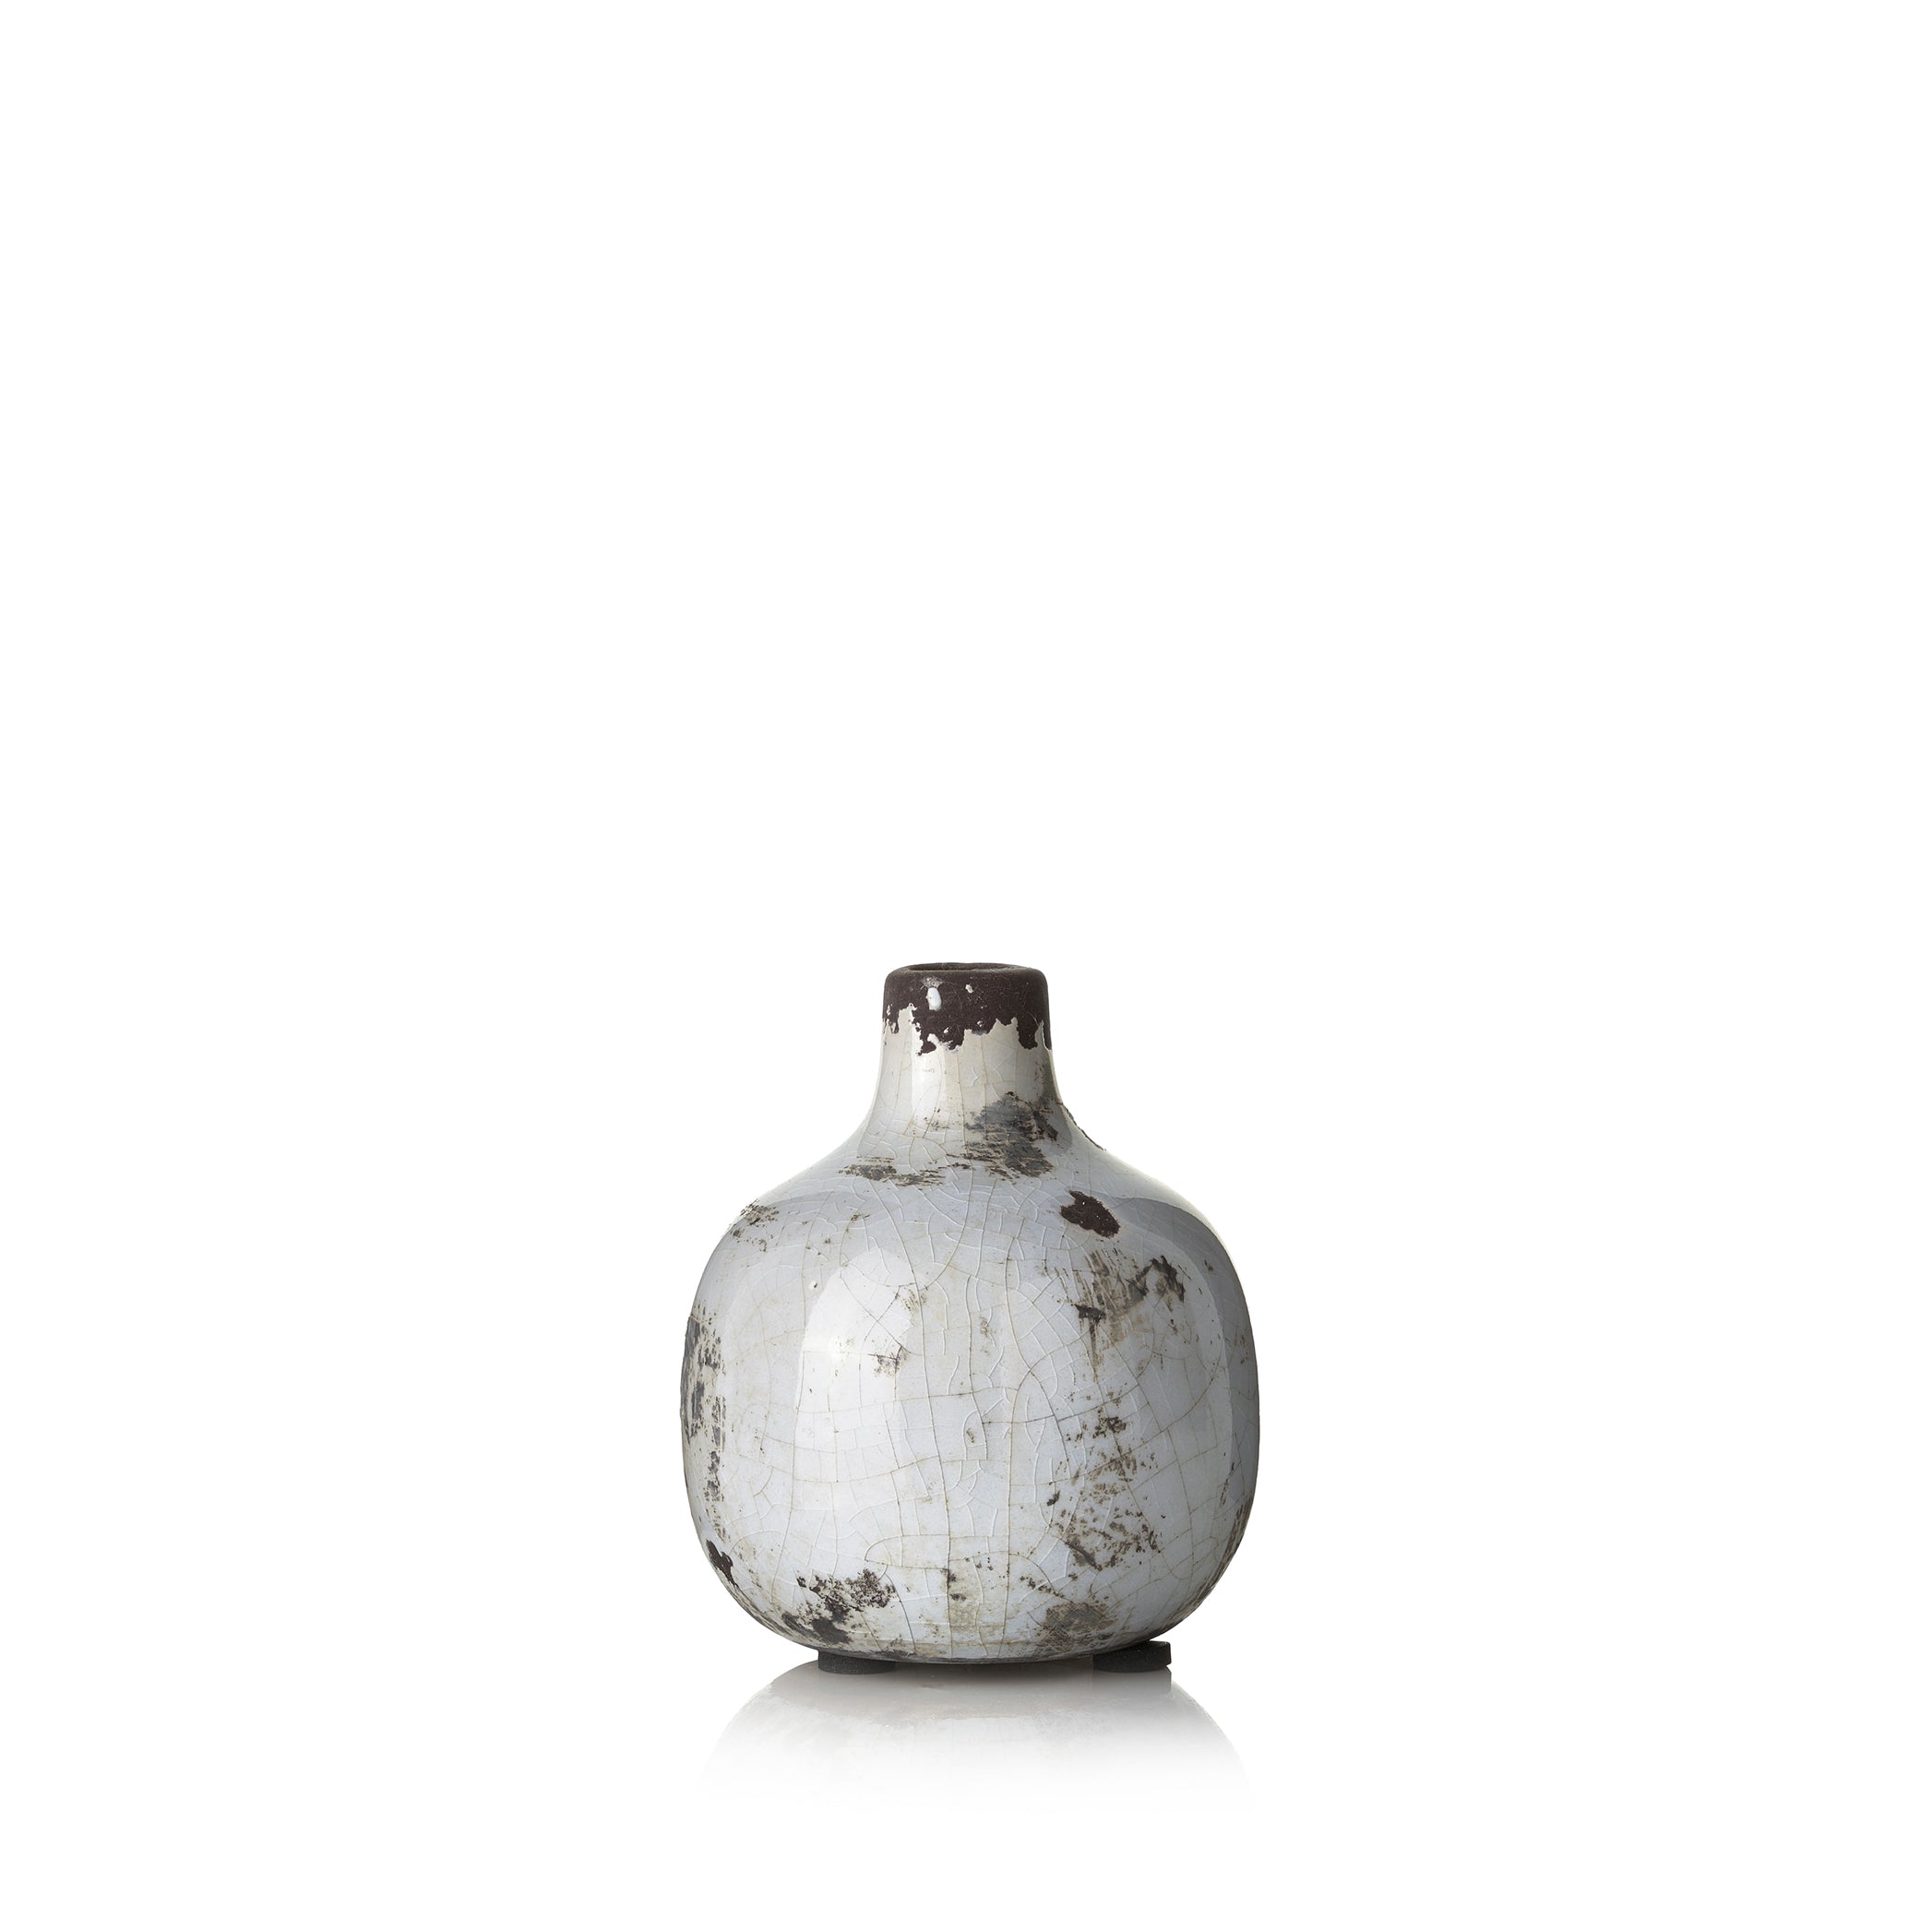 Ceramic Crackled Vase in White